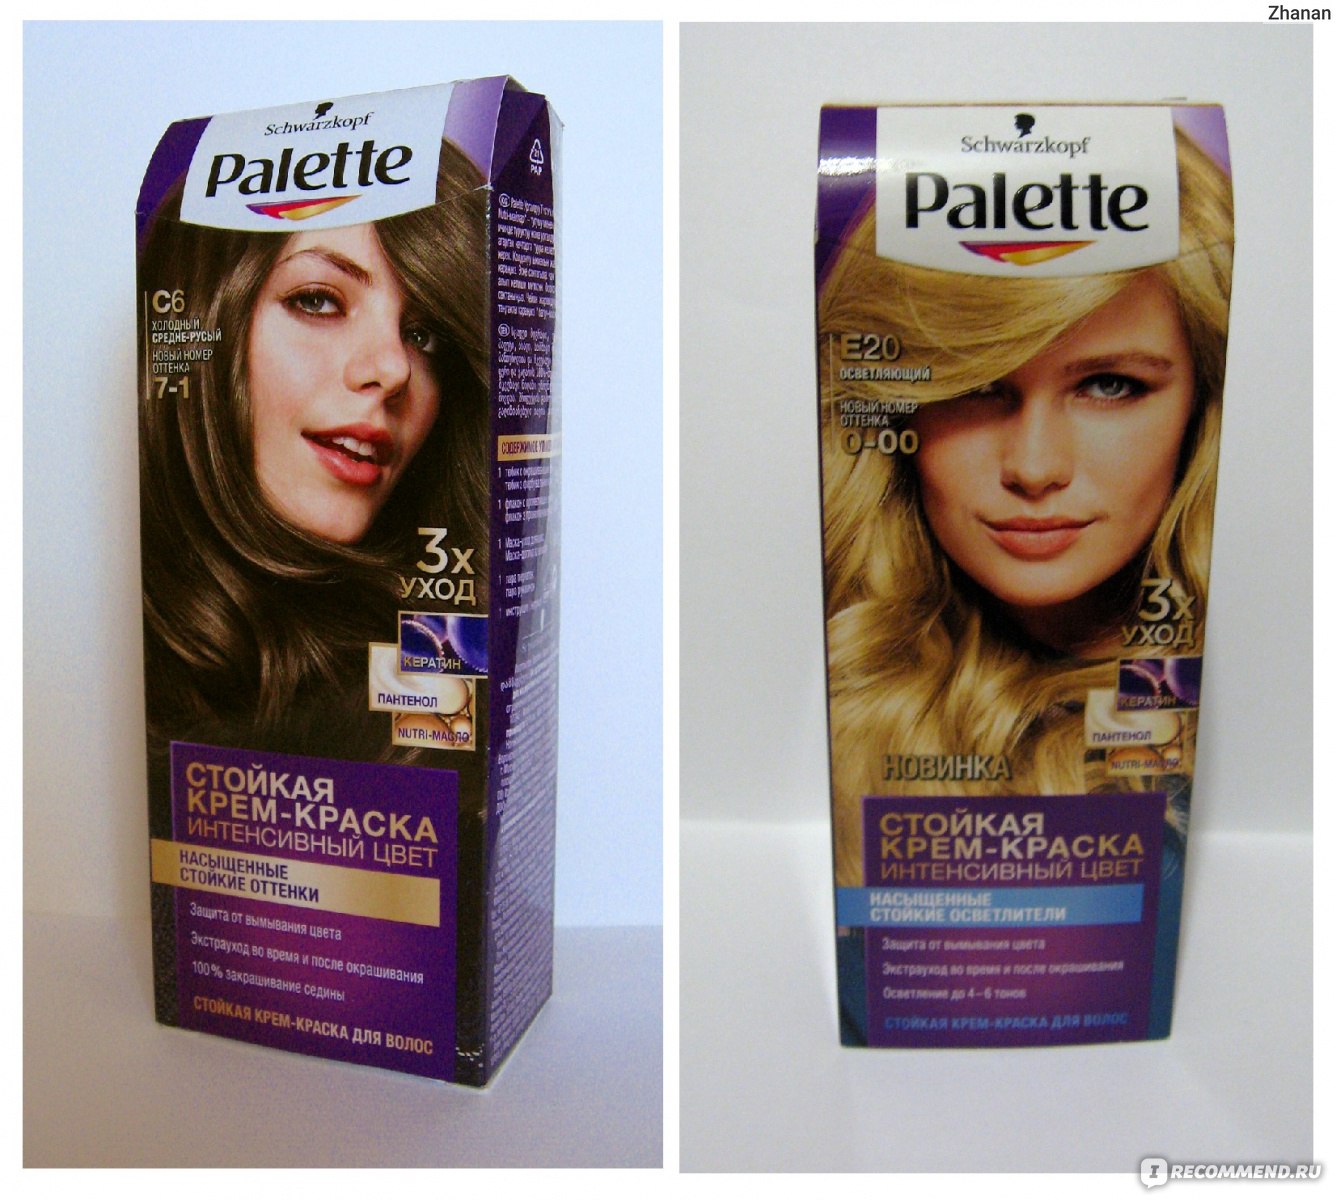 Palette – купить краску для волос по низкой цене в интернет-магазине «Подружка»